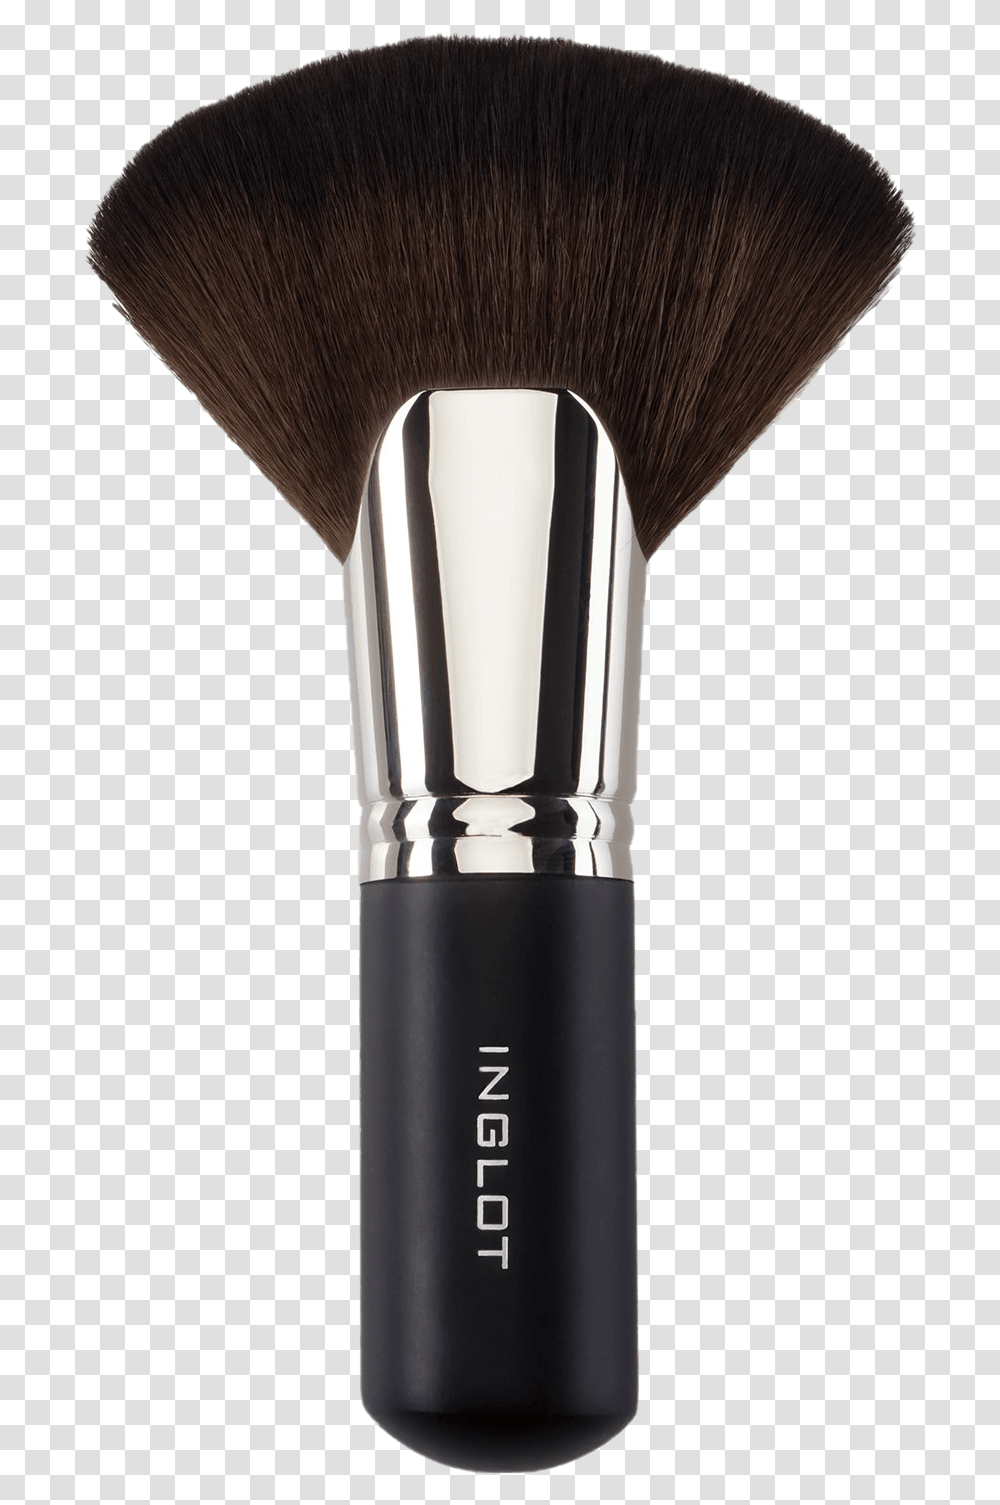 Makeup Brush Image Hd Inglot Make Up Brush, Tool, Toothbrush Transparent Png